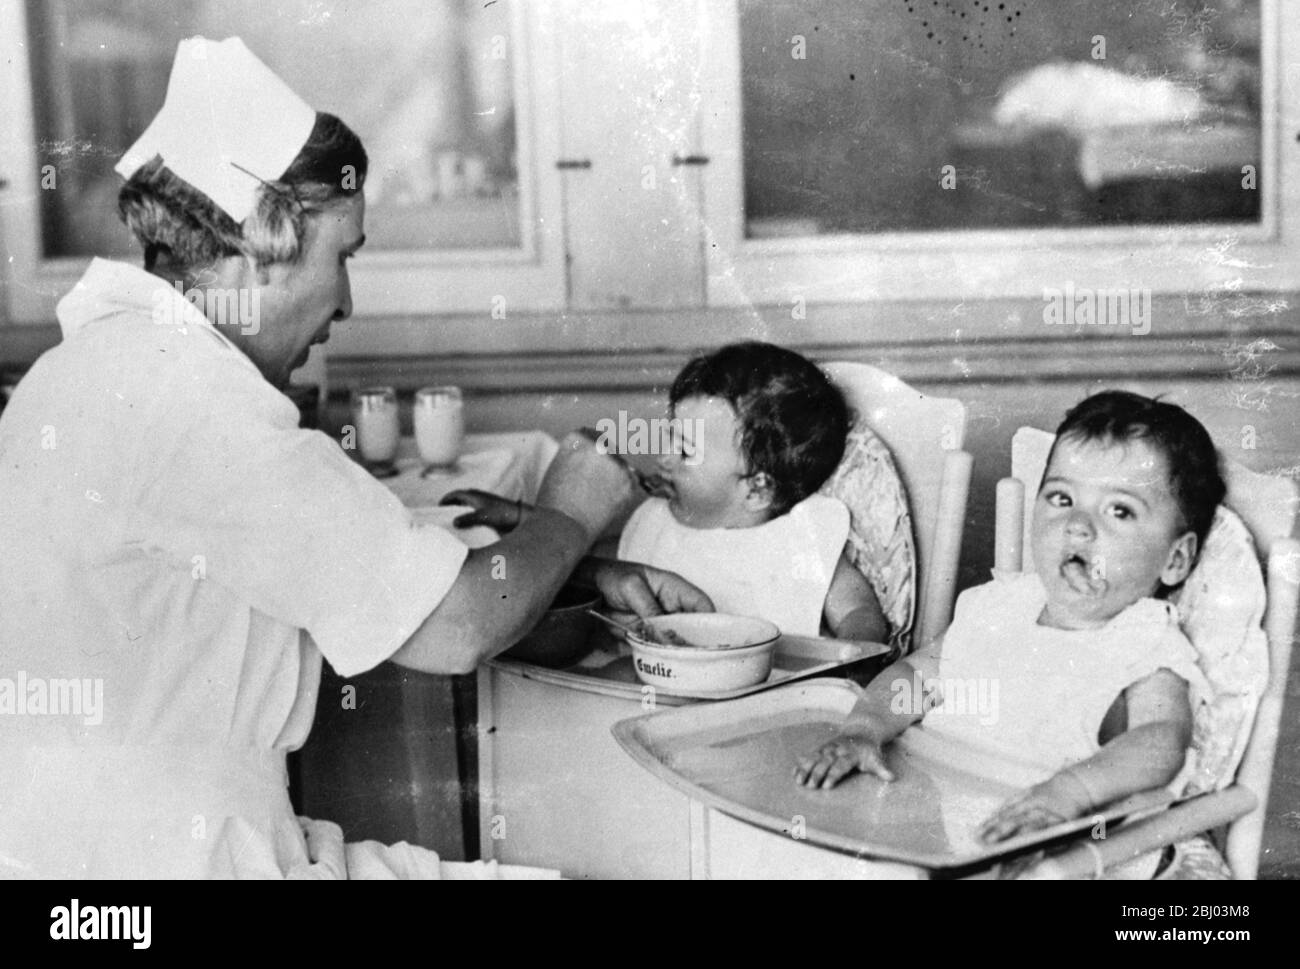 Eine der Dione Quint Fütterung . Cecile nimmt einen Mund von Nahrung von der Krankenschwester. - 1935 Stockfoto